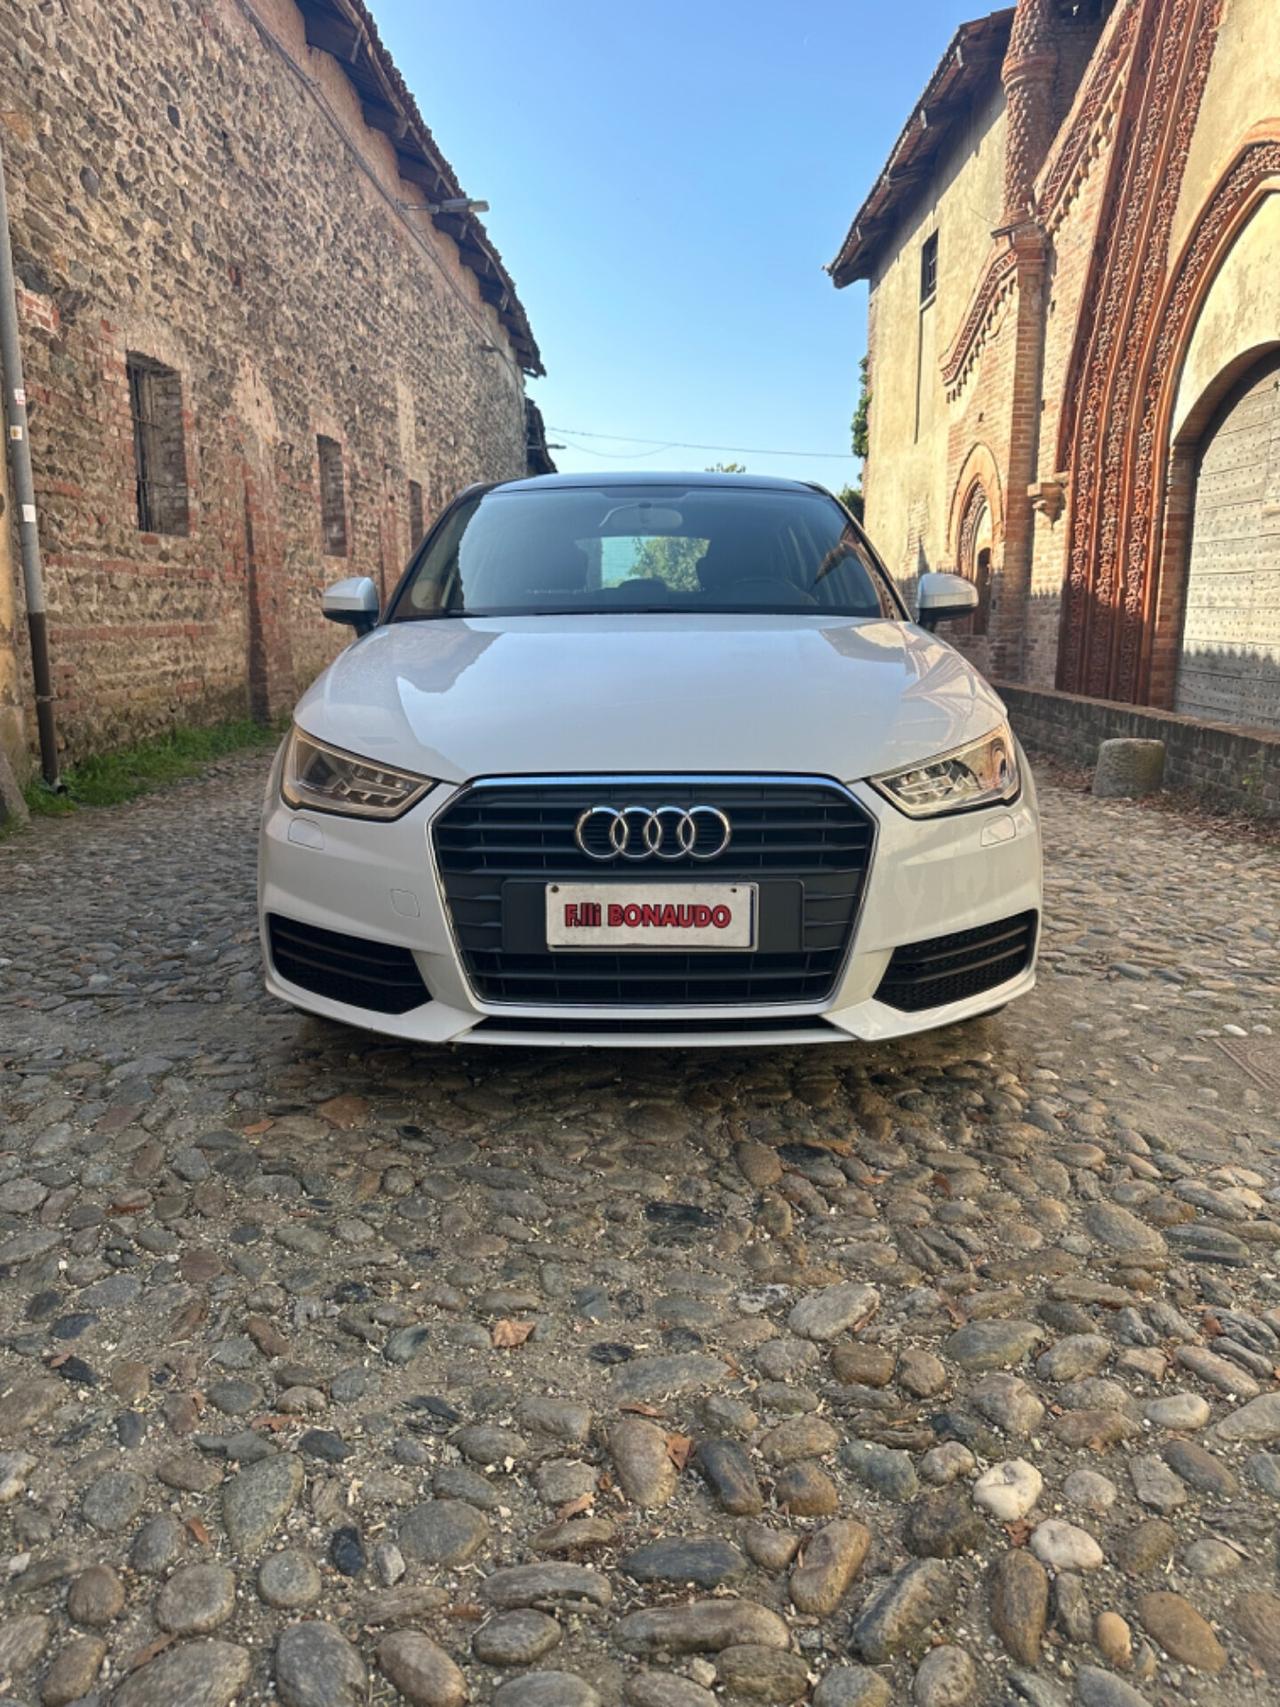 Audi A1 SPB 1.6 TDI 116 CV Metal plus